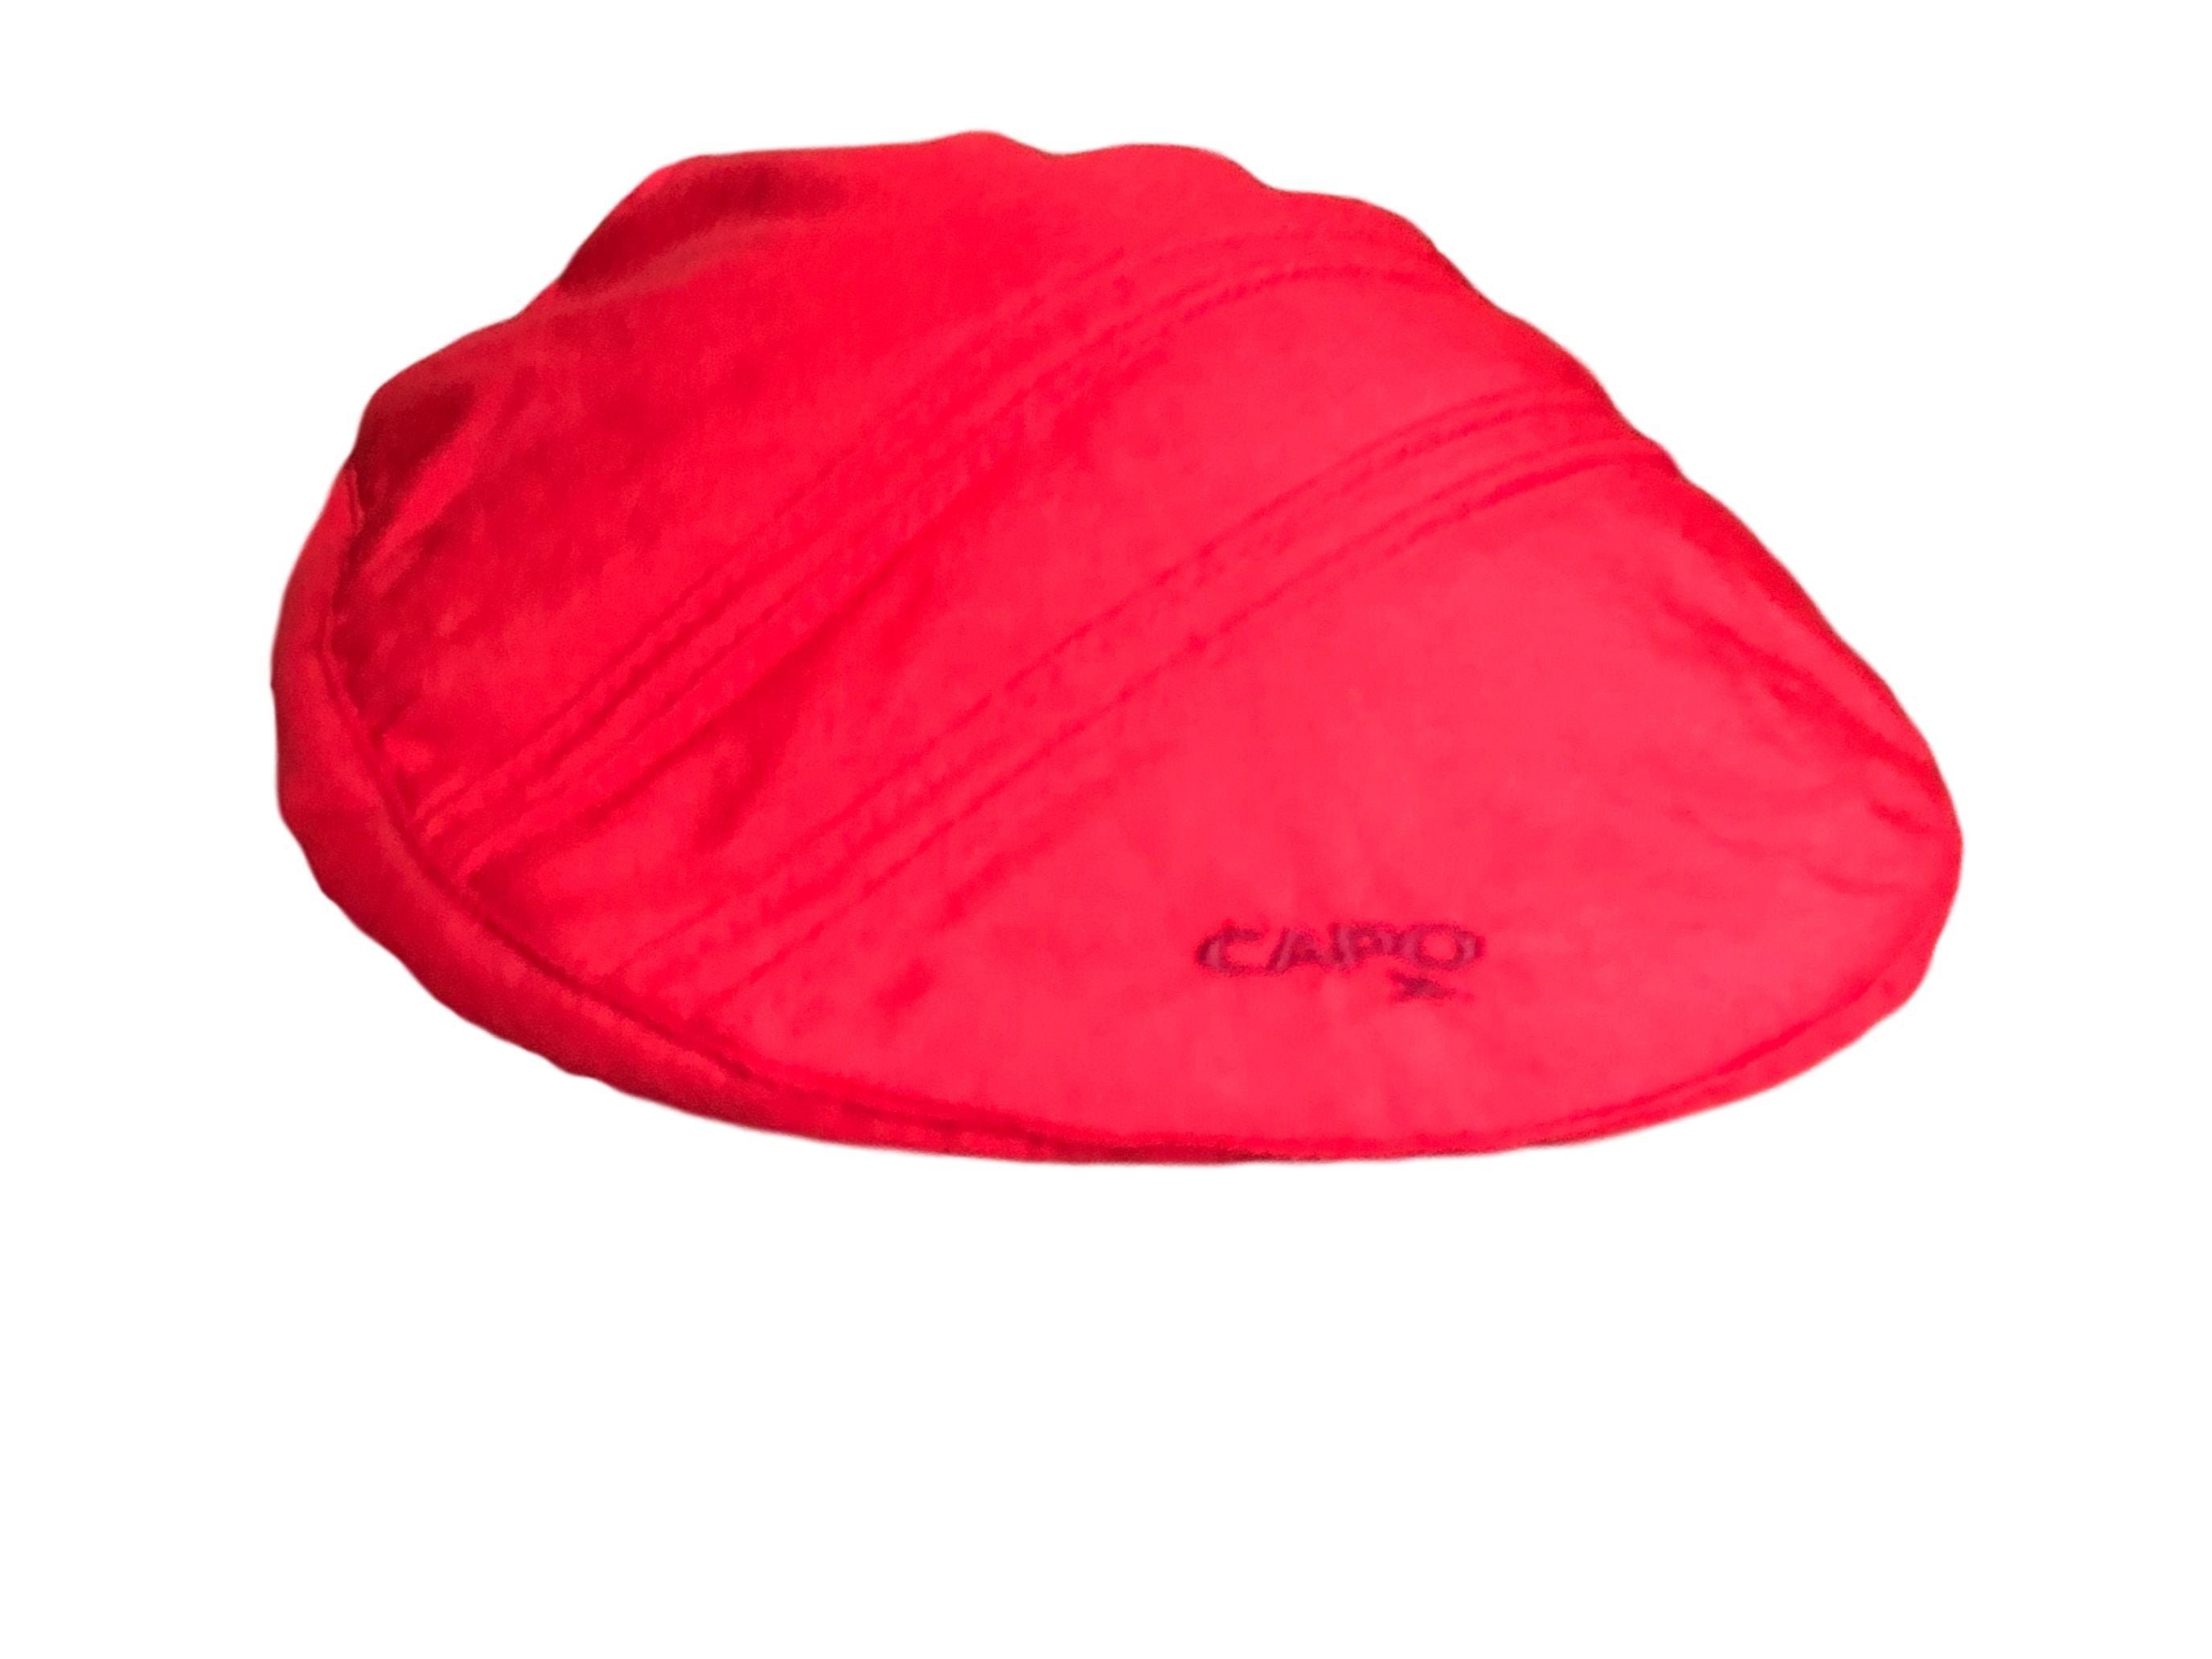 CAPO Schirmmütze Capo Cap Goretex Mütze rot